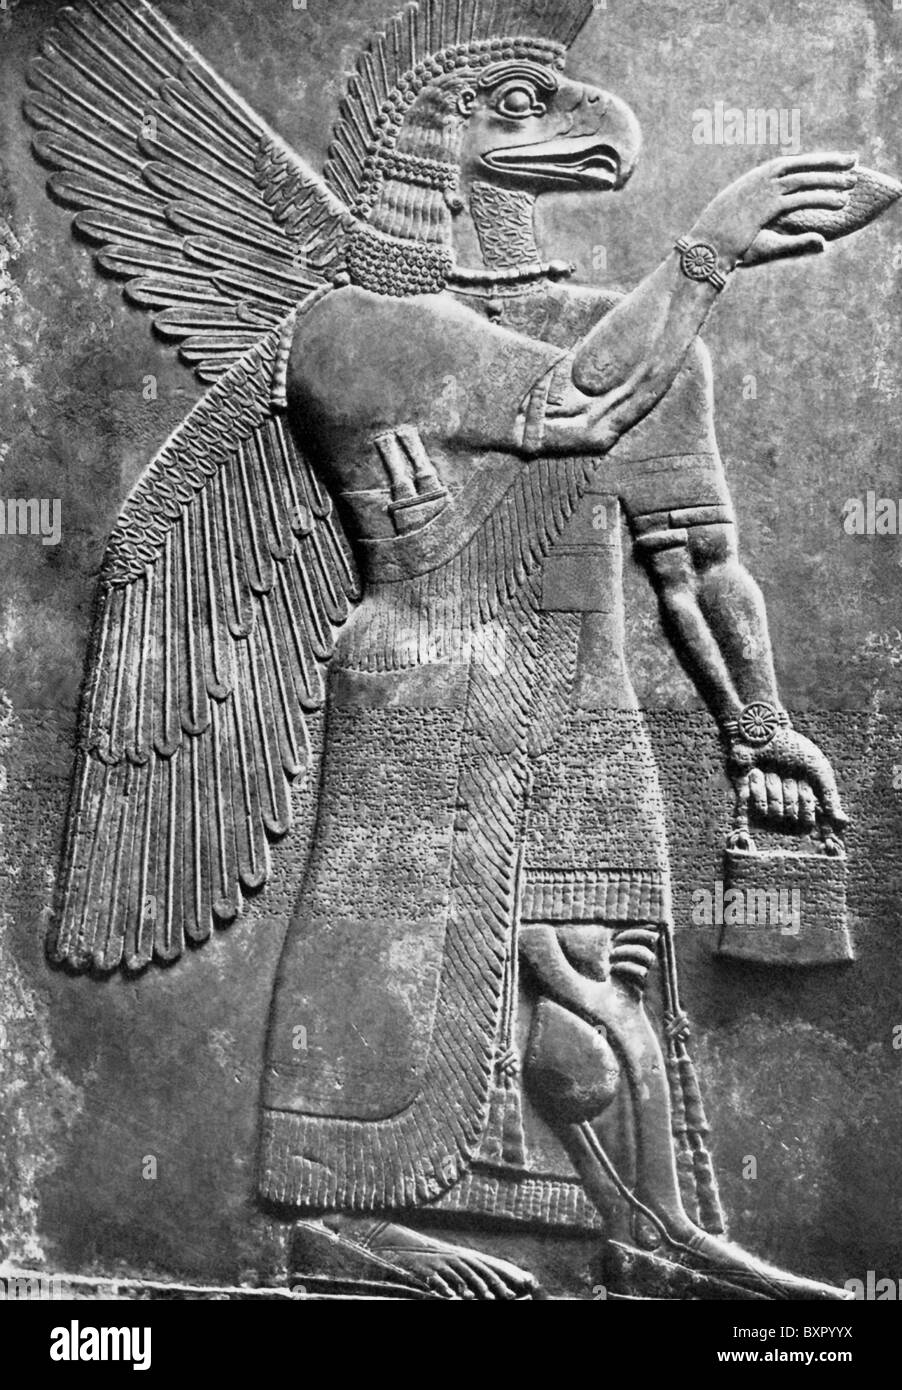 Diese geflügelten unter der Leitung von Adler assyrischen Kreatur war bekannt als ein sind. Das Relief wurde in Nimrud im Irak entdeckt. Stockfoto